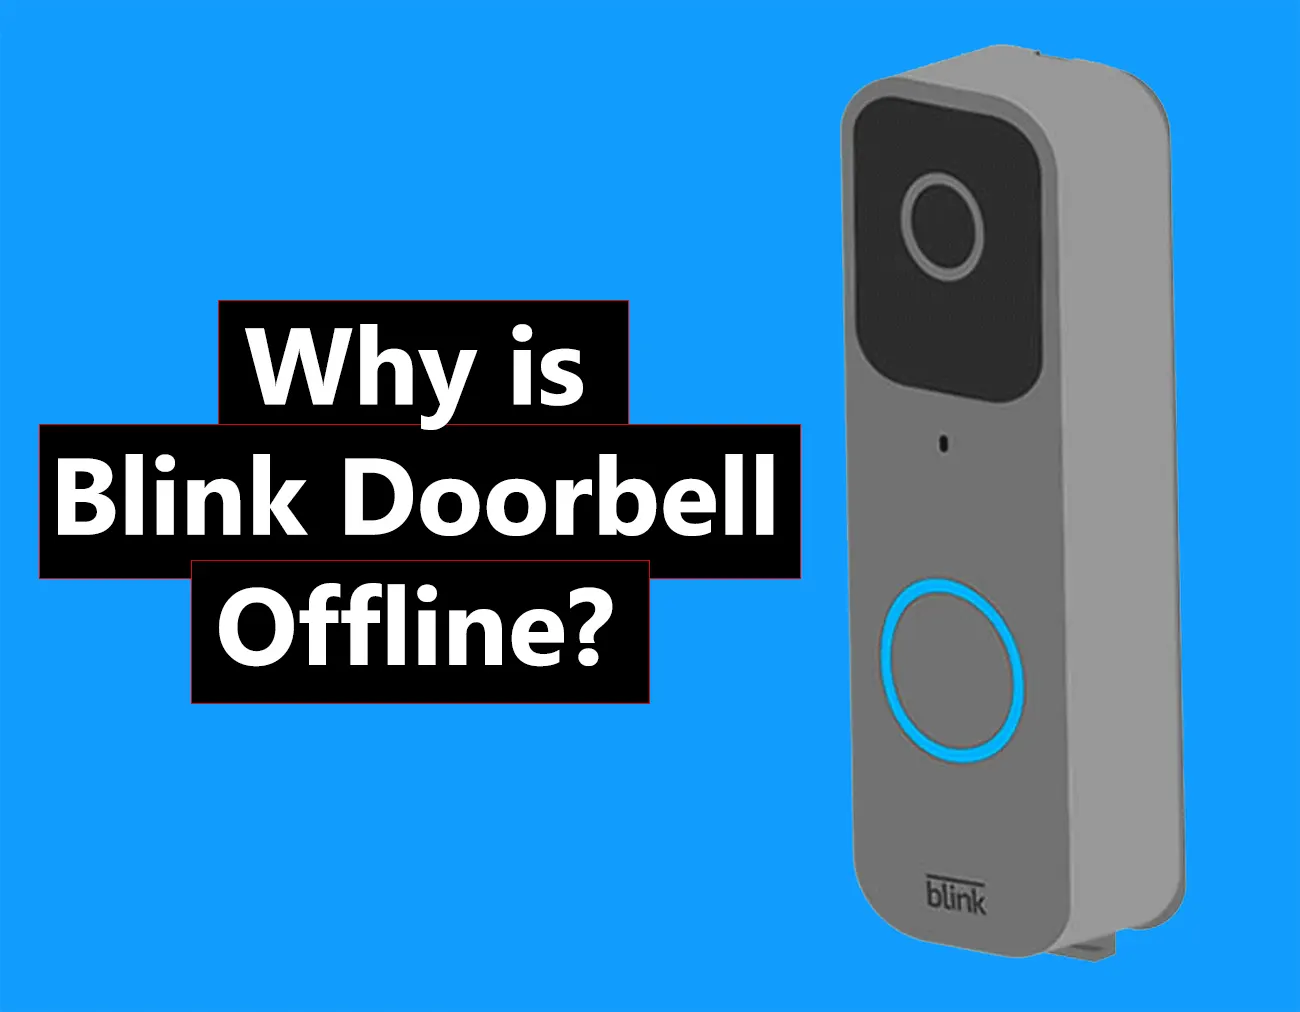 Blink Doorbell Offline